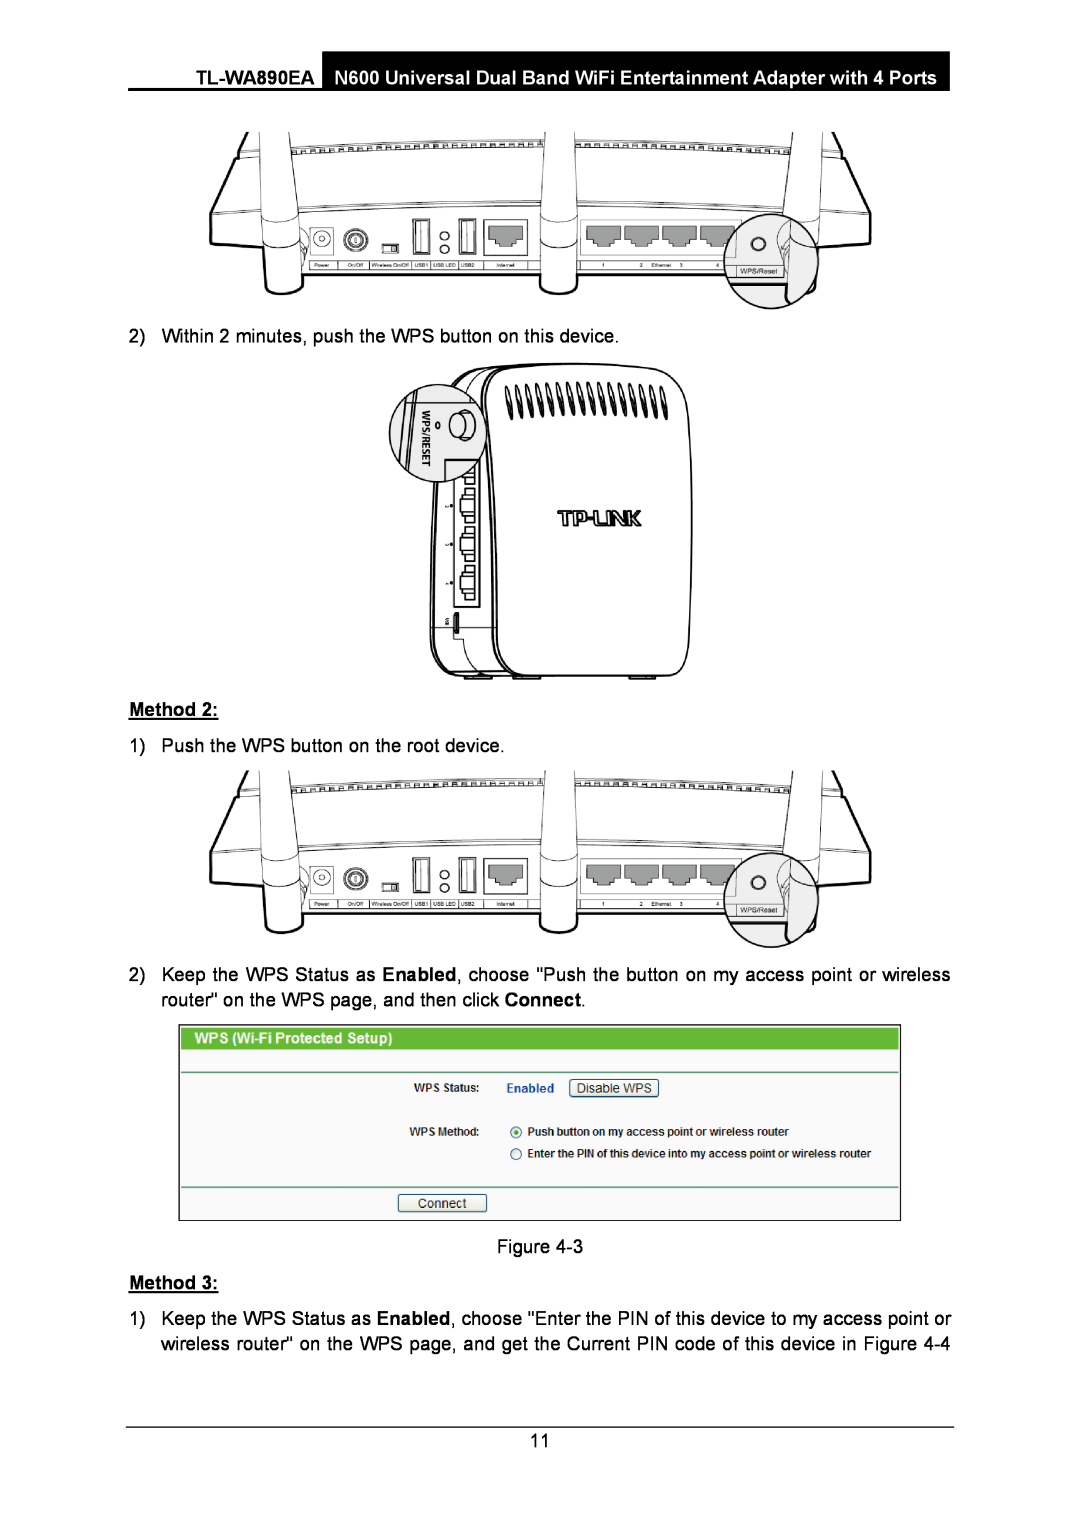 TP-Link WA-890EA manual Method 